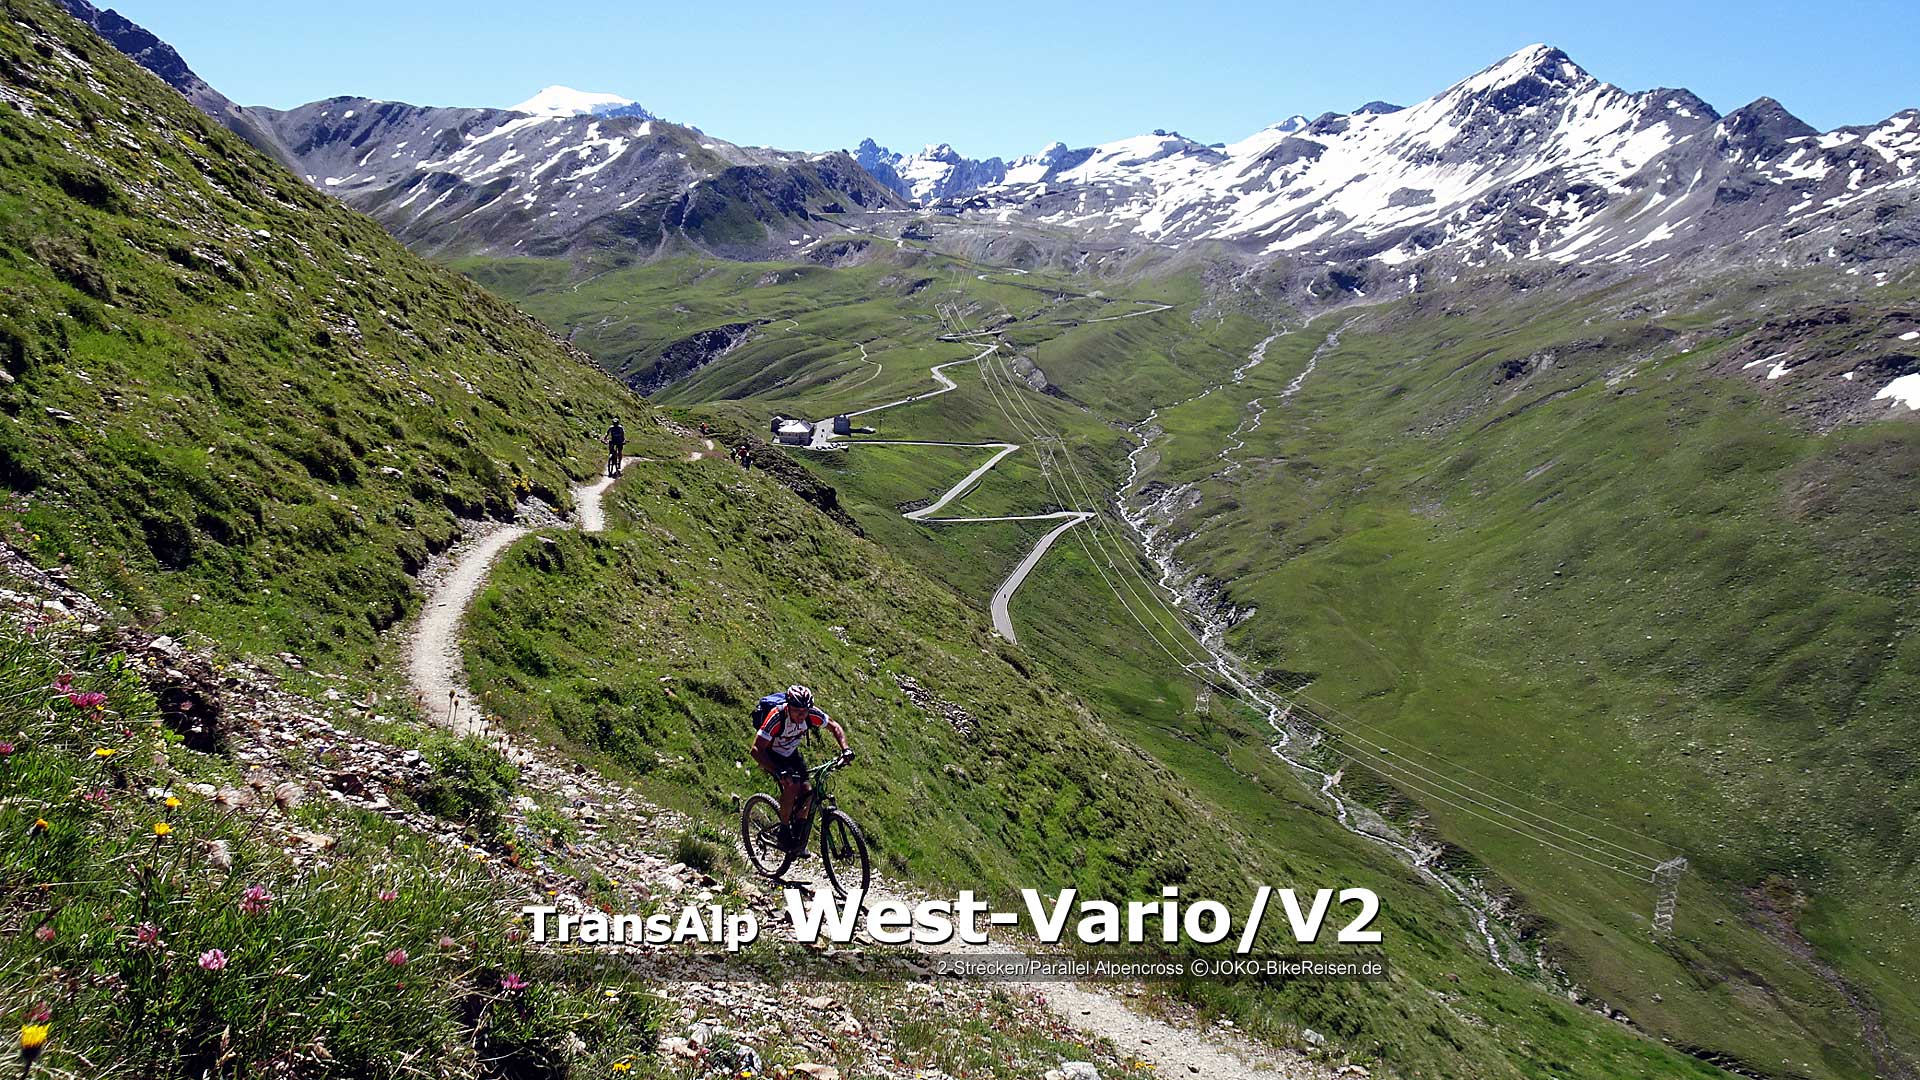 MTB-Alpencüberquerung 2-Strecken (für Kumpels/Gruppen/Paare) zum Gardasee/Riva